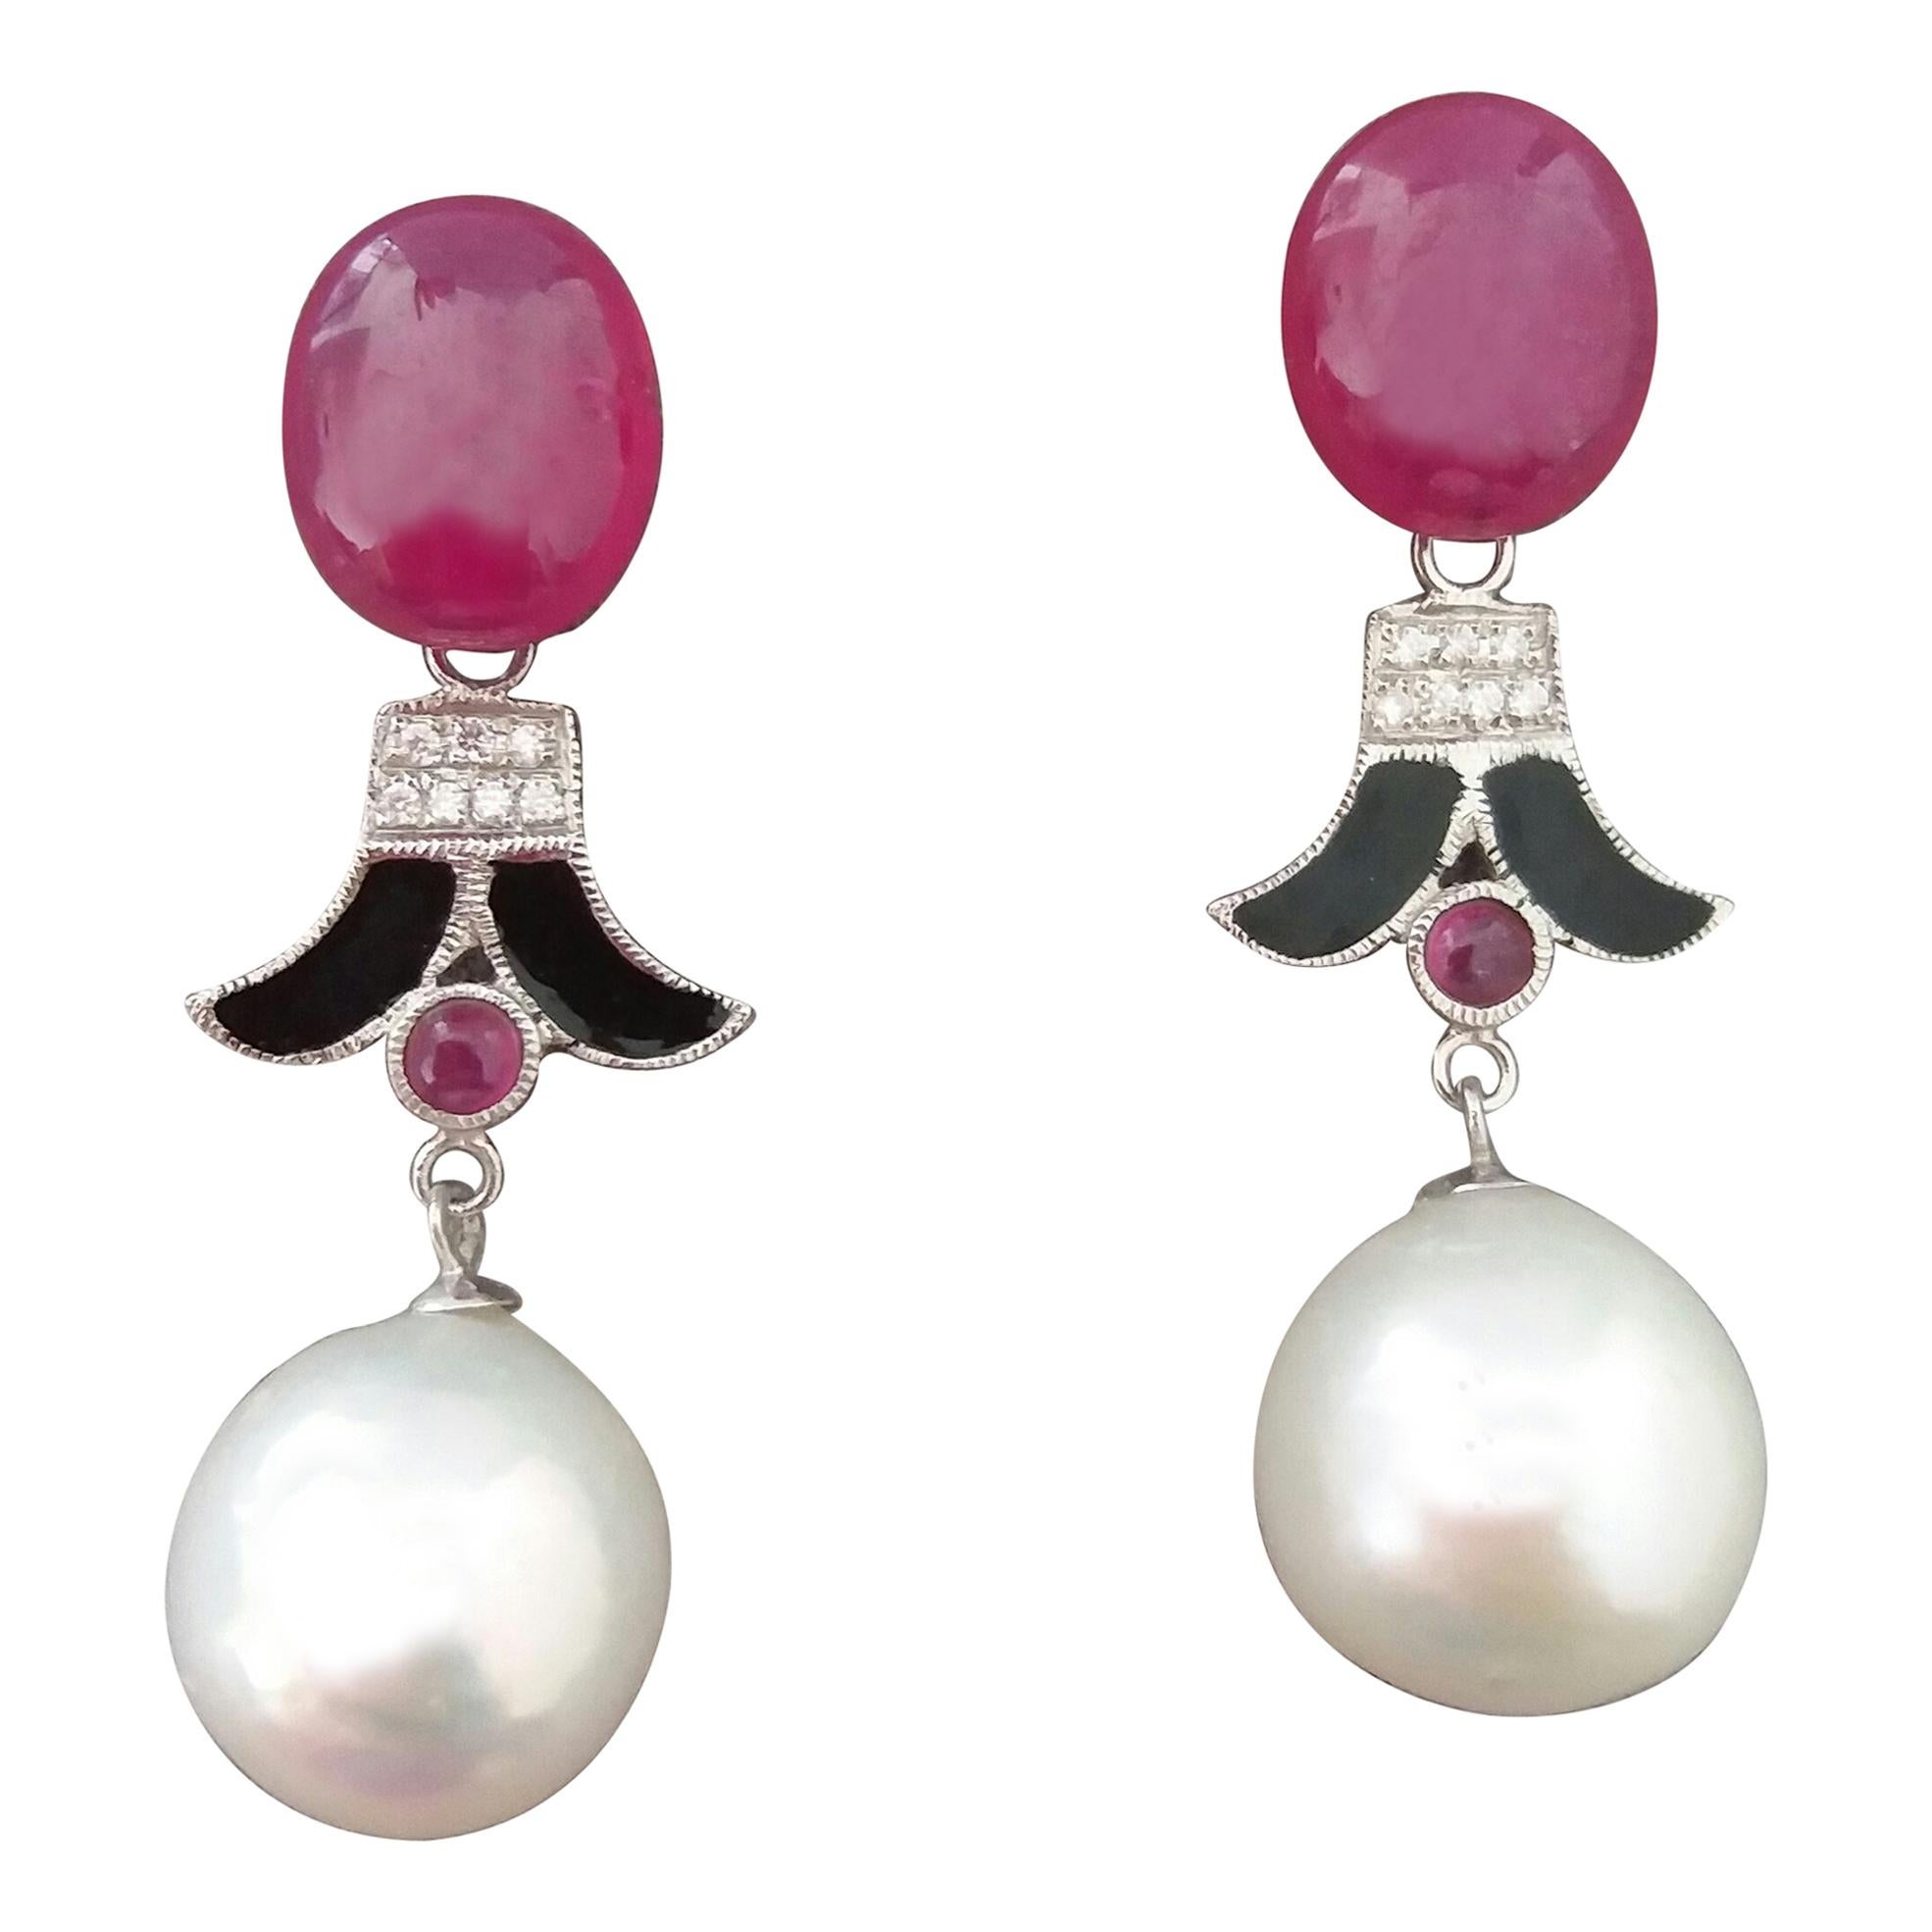 Boucles d'oreilles de style Art déco en or, émail noir, émail et diamants, avec perles baroques blanches et rubis